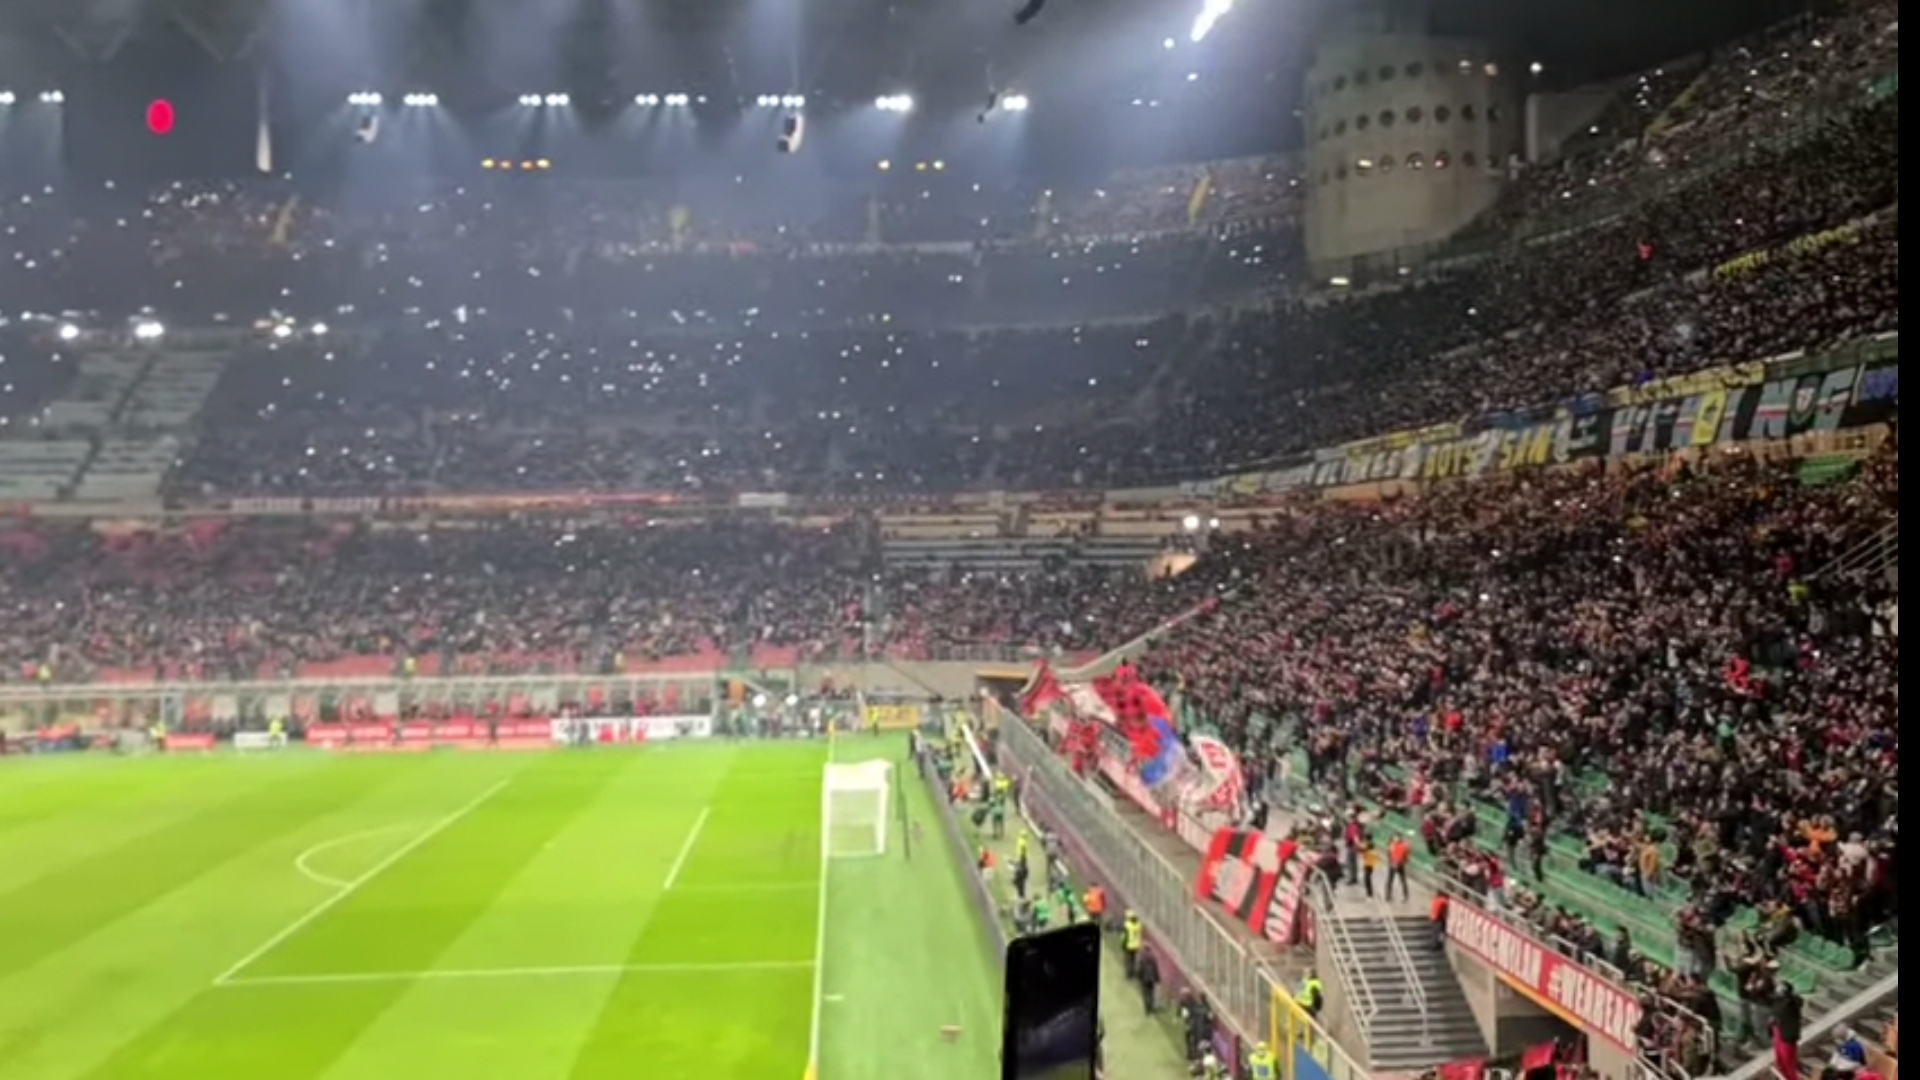 Milan-Genoa 2-0: apre Leao, chiude Messias. Rossoblù evanescenti